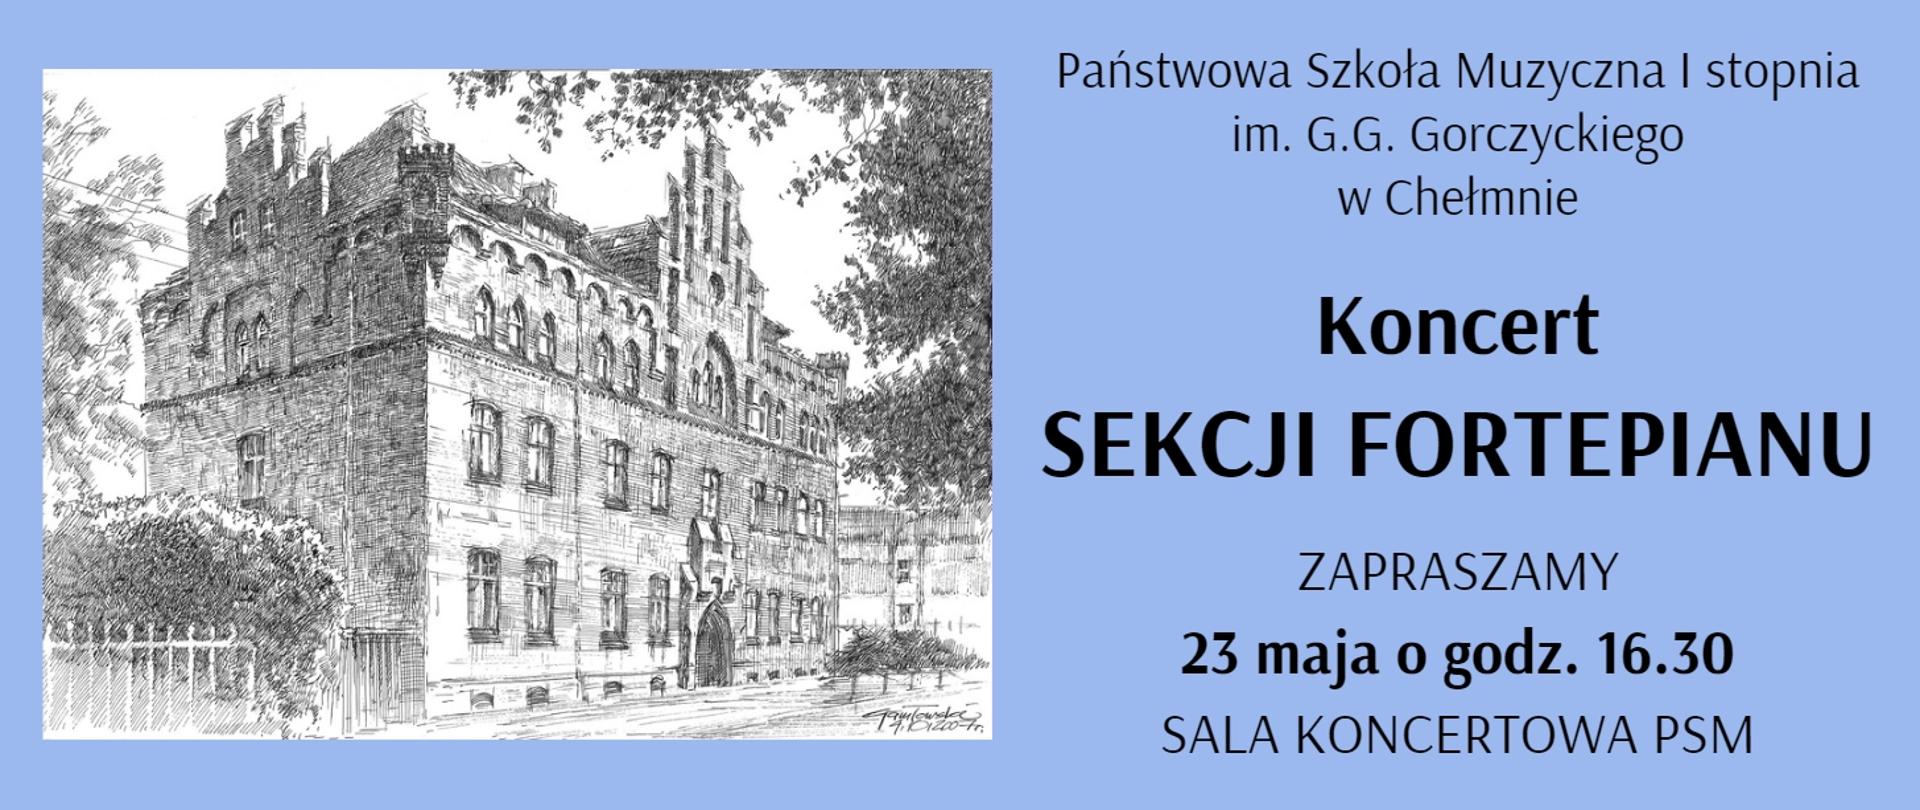 Po lewej stronie rycina przedstawiająca budynek PSM w Chełmnie. Po prawej stronie tekst informujący o koncercie.